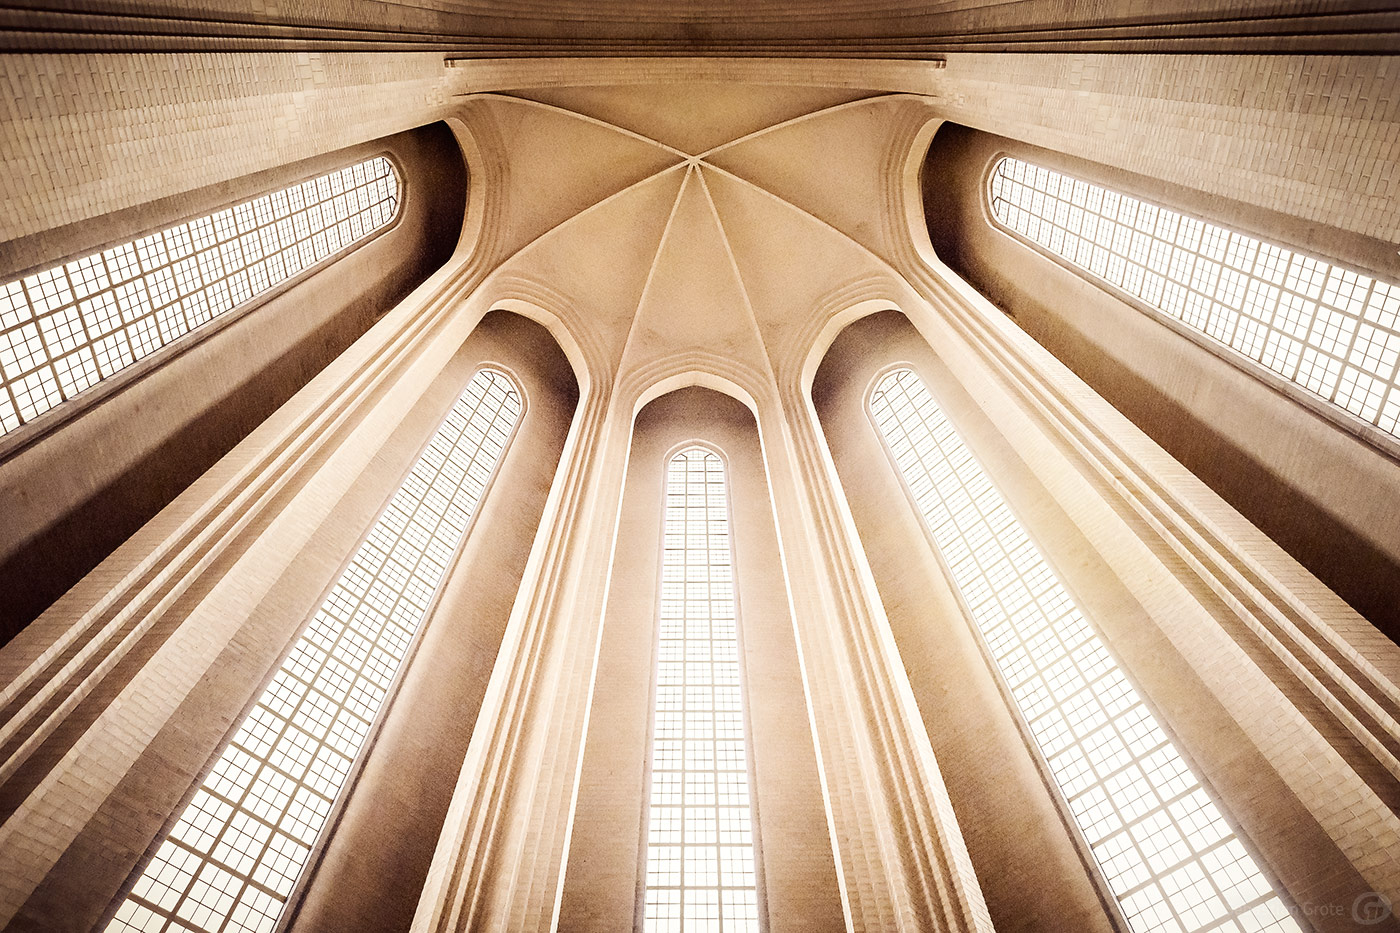 Grundtvigskirche im Kopenhagener Stadtteil Bispebjerg, ein Beispiel expressionistischer Architektur mit neugotischen Elementen